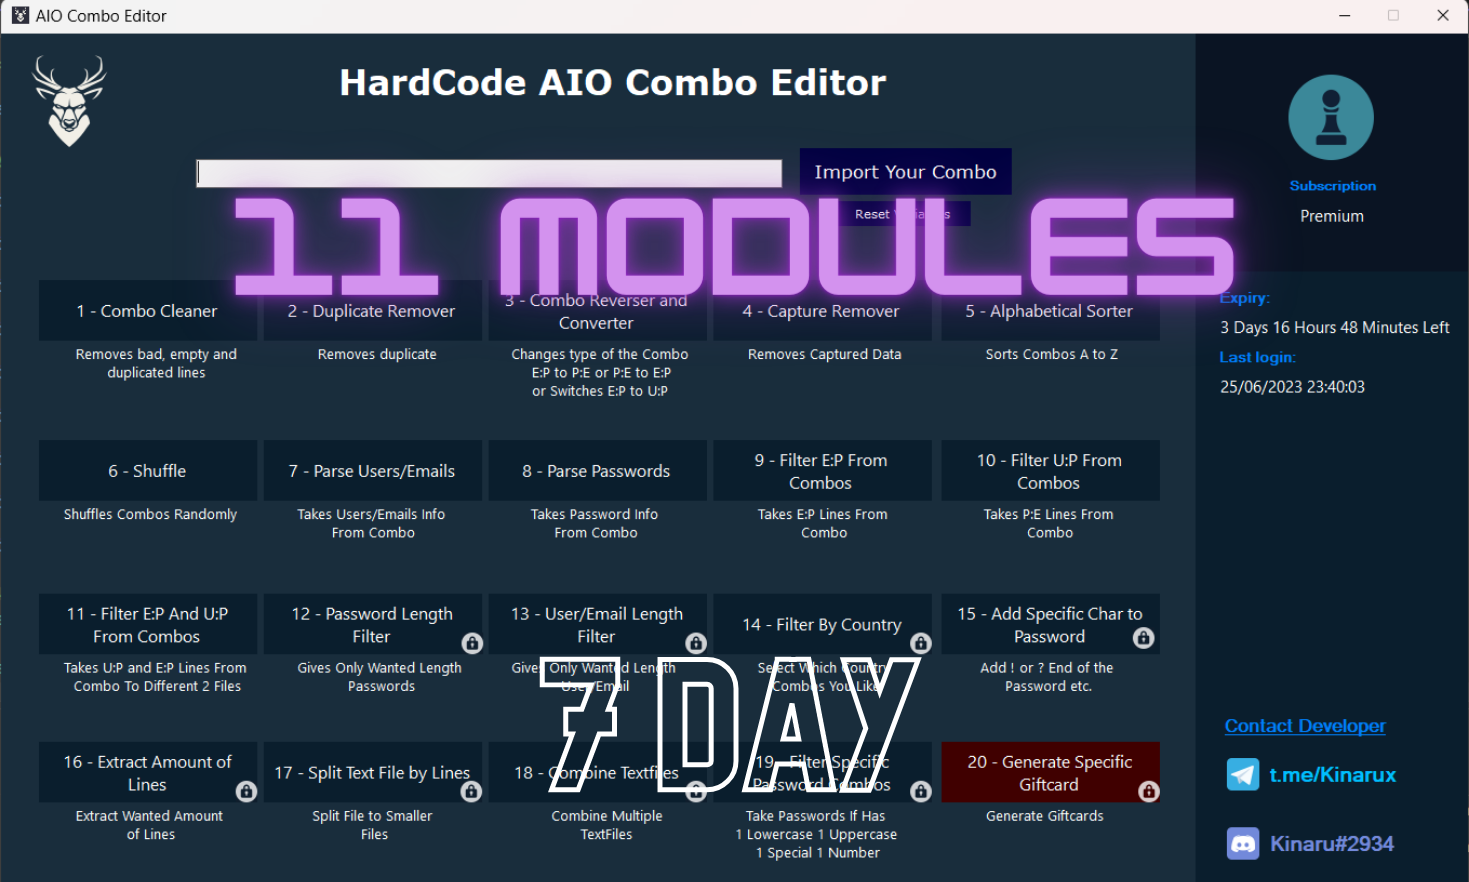 AIO Combo Editor Premium License Key 7 Day